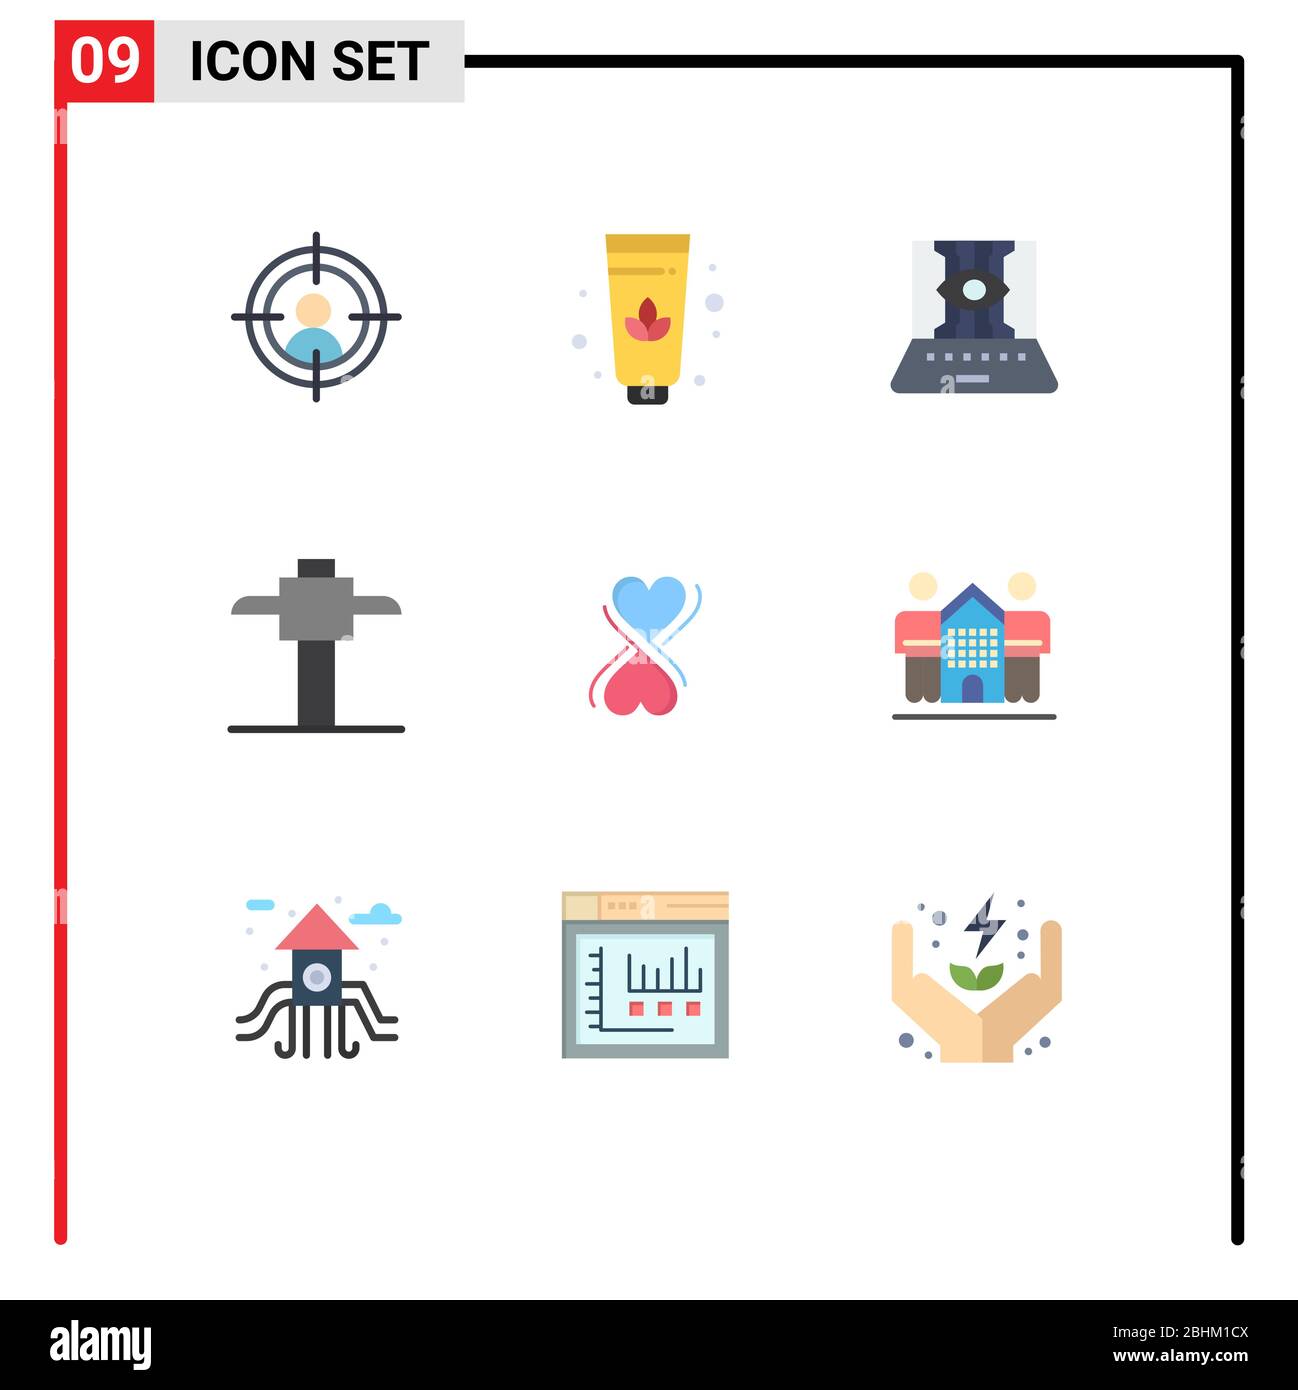 Ensemble de 9 icônes d'interface utilisateur modernes symboles signes pour les amis, la culture, technique, typographie, coeur Editable Vector Design Elements Illustration de Vecteur